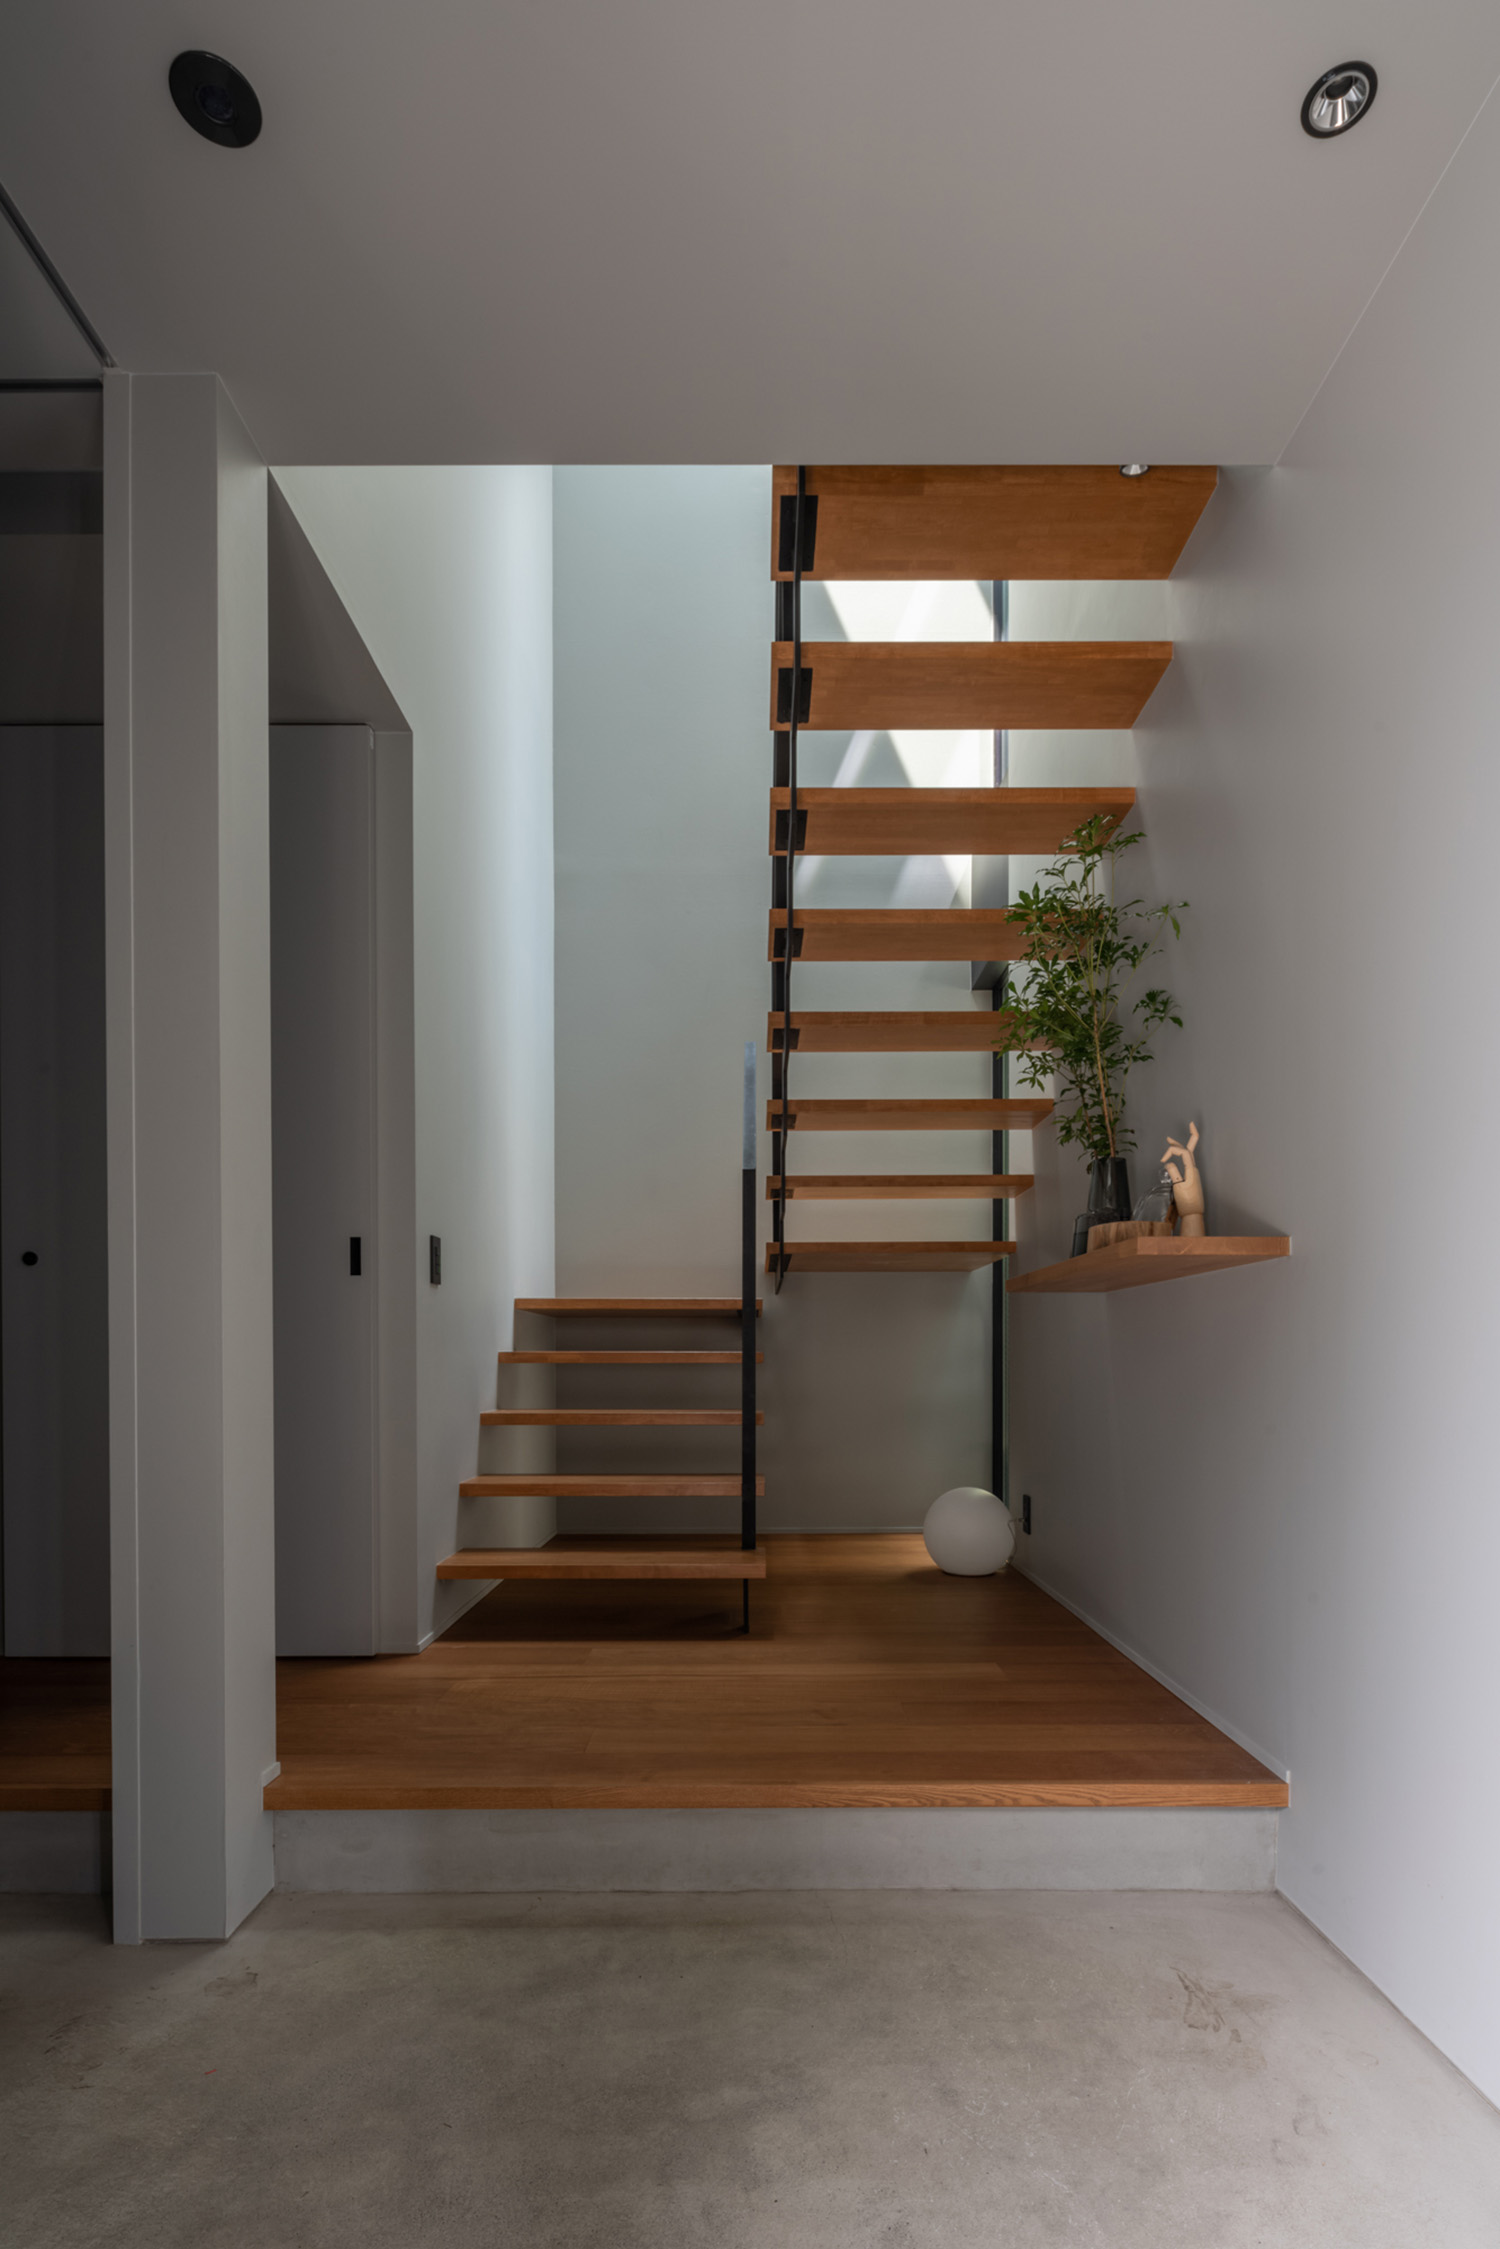 注文住宅・玄関・スケルトン階段・木製の階段